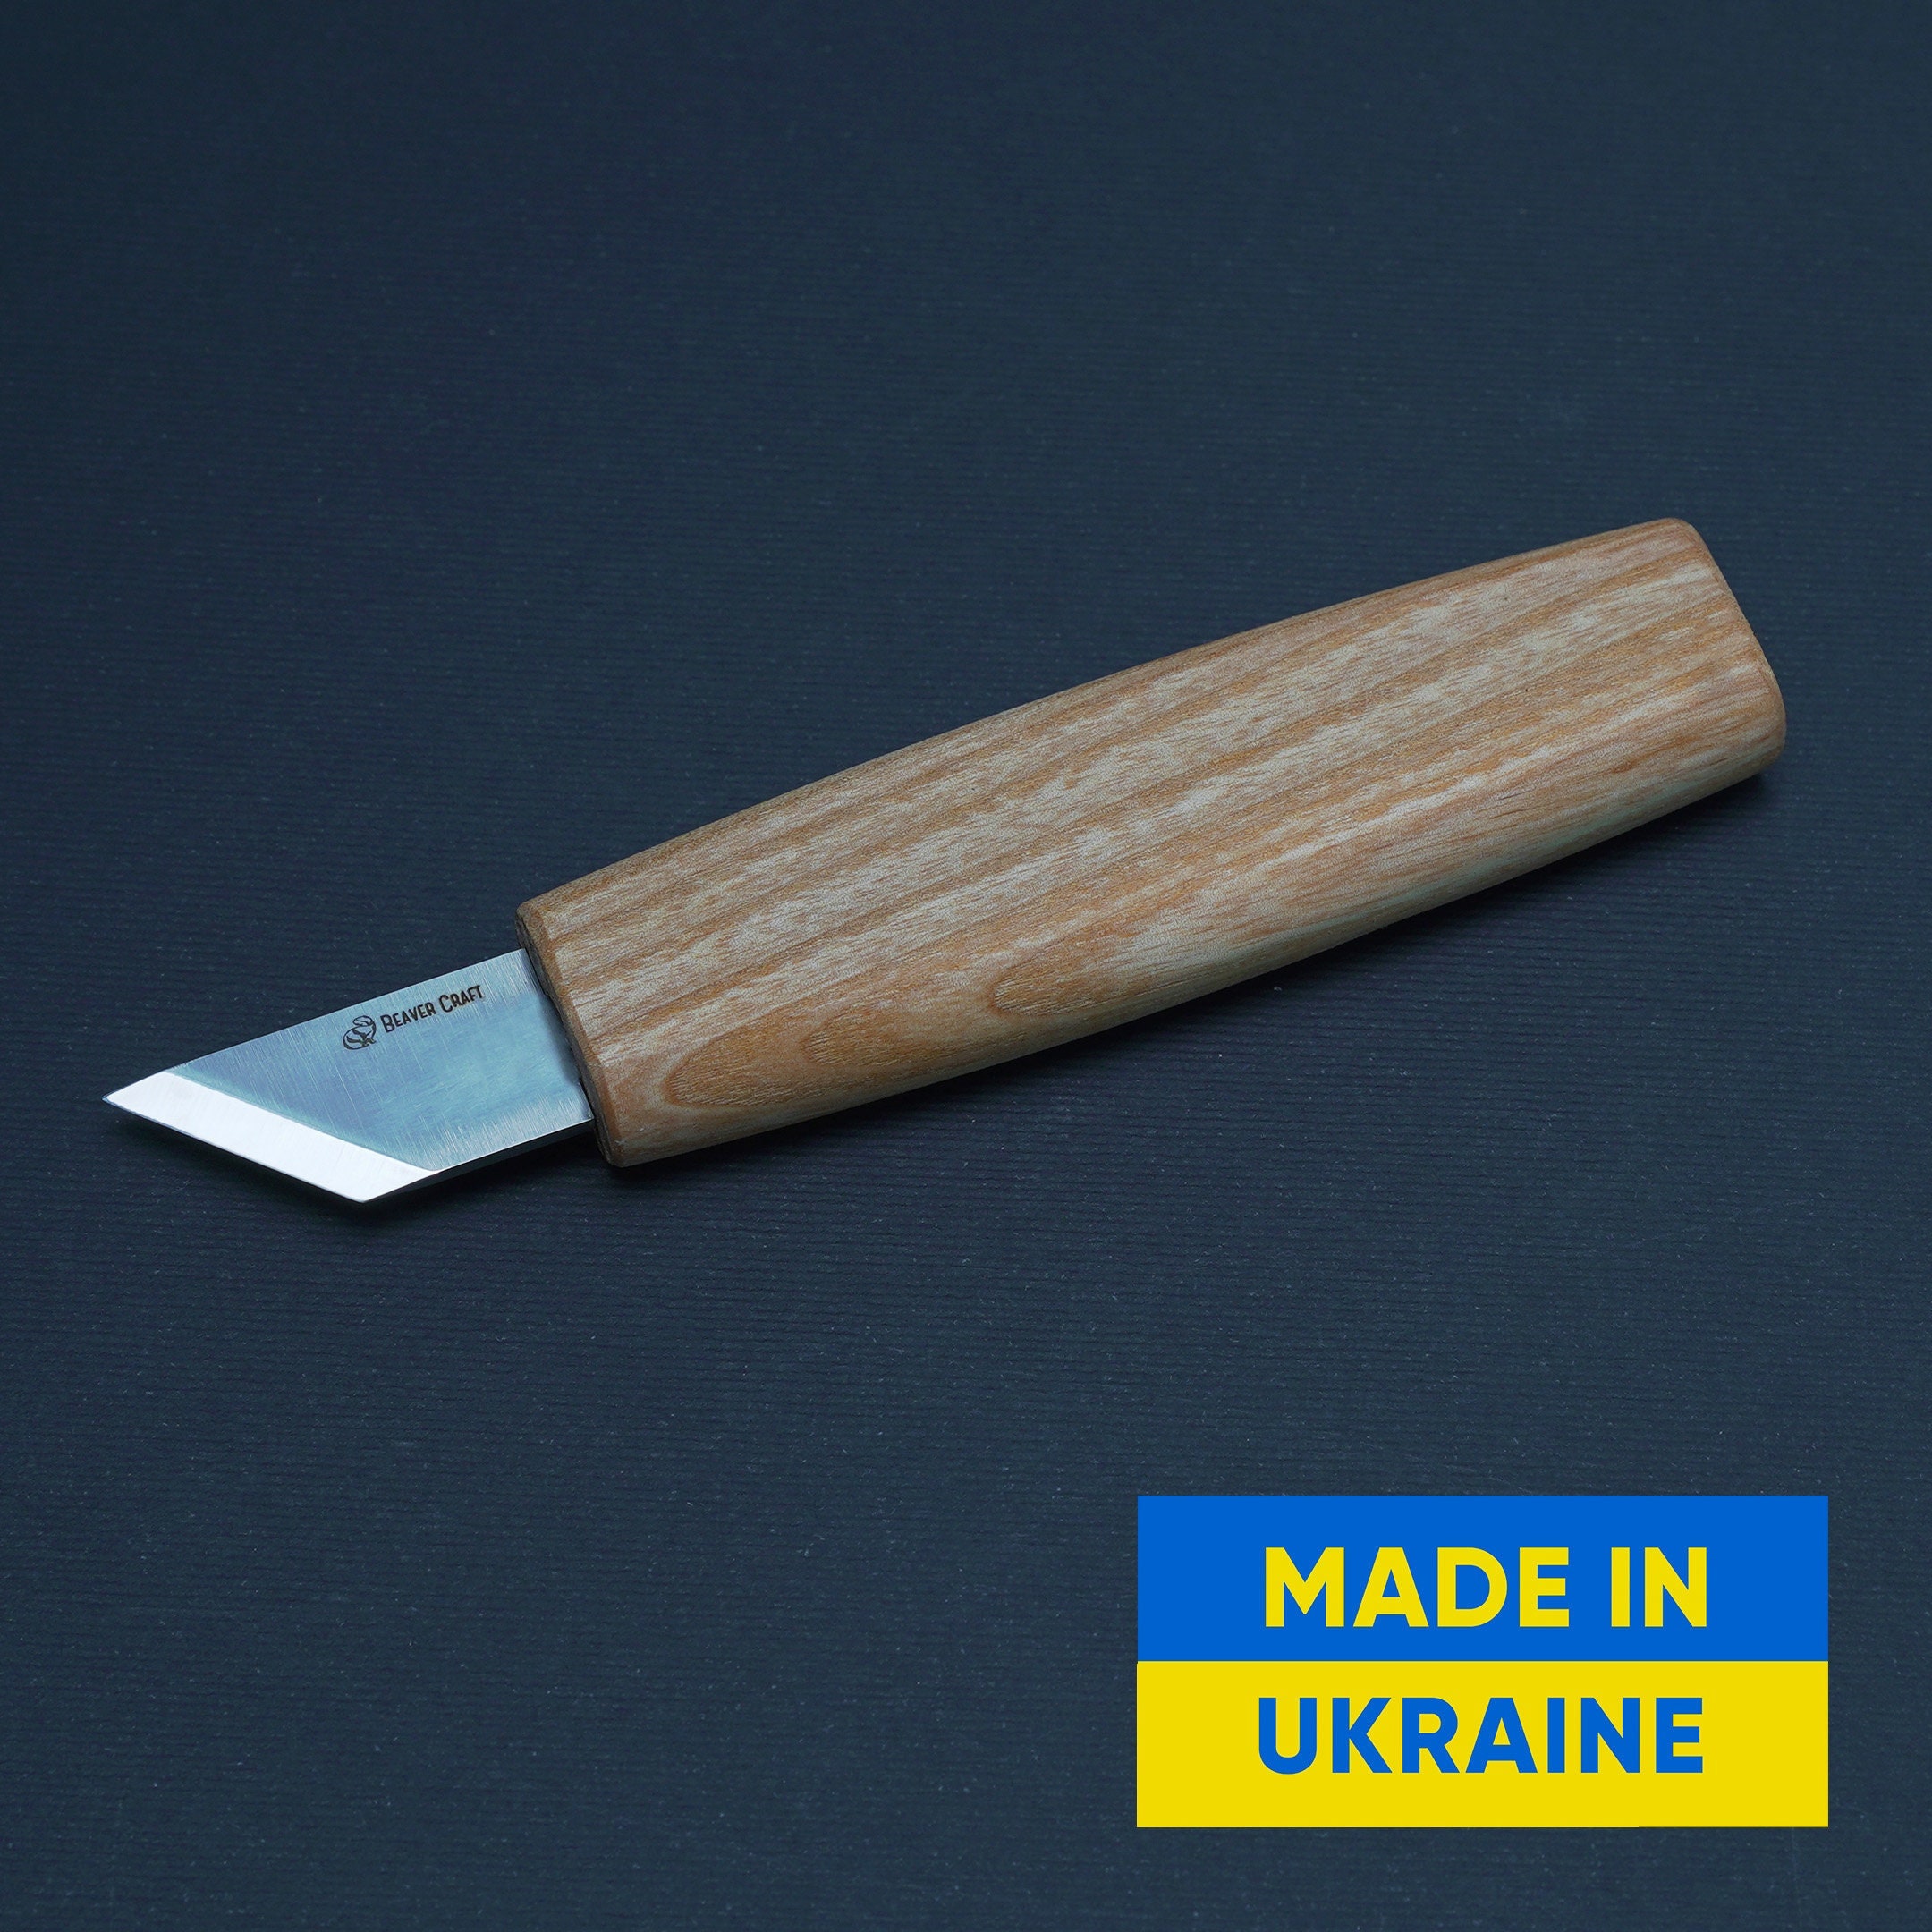 Striking Knife, Vintage-Designed Woodworking Tools